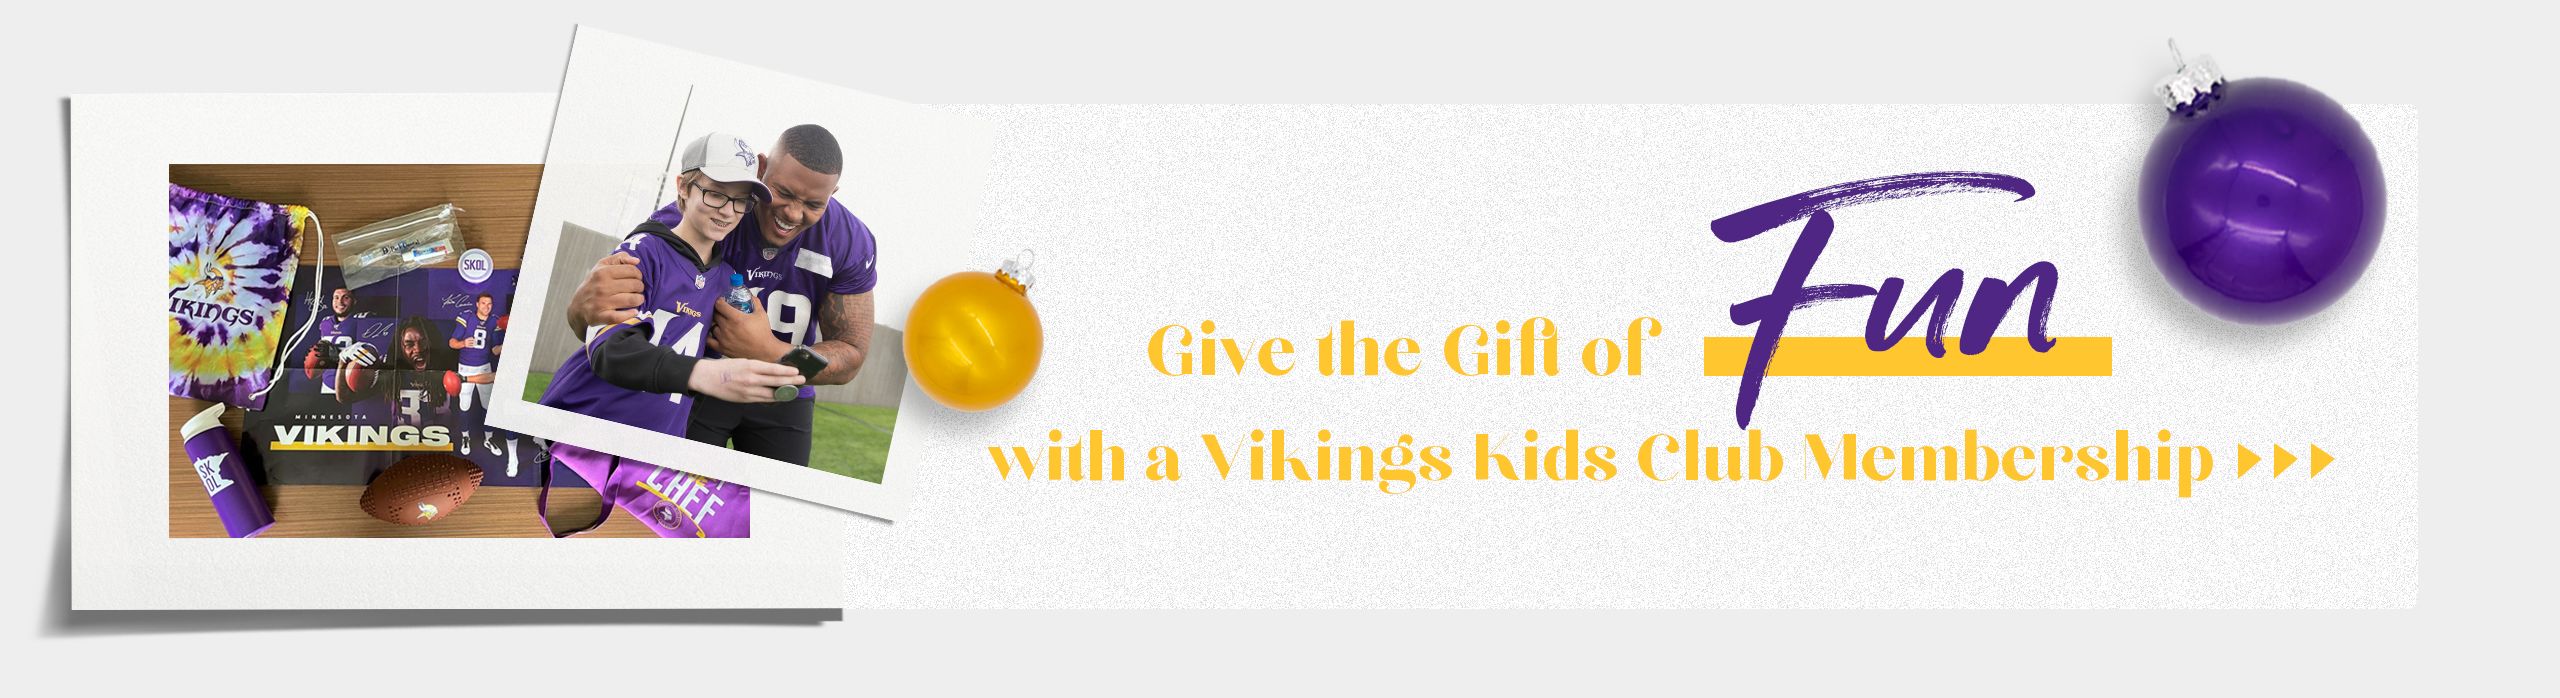 Minnesota Vikings Merchandise, Gifts & Fan Gear - SportsUnlimited.com